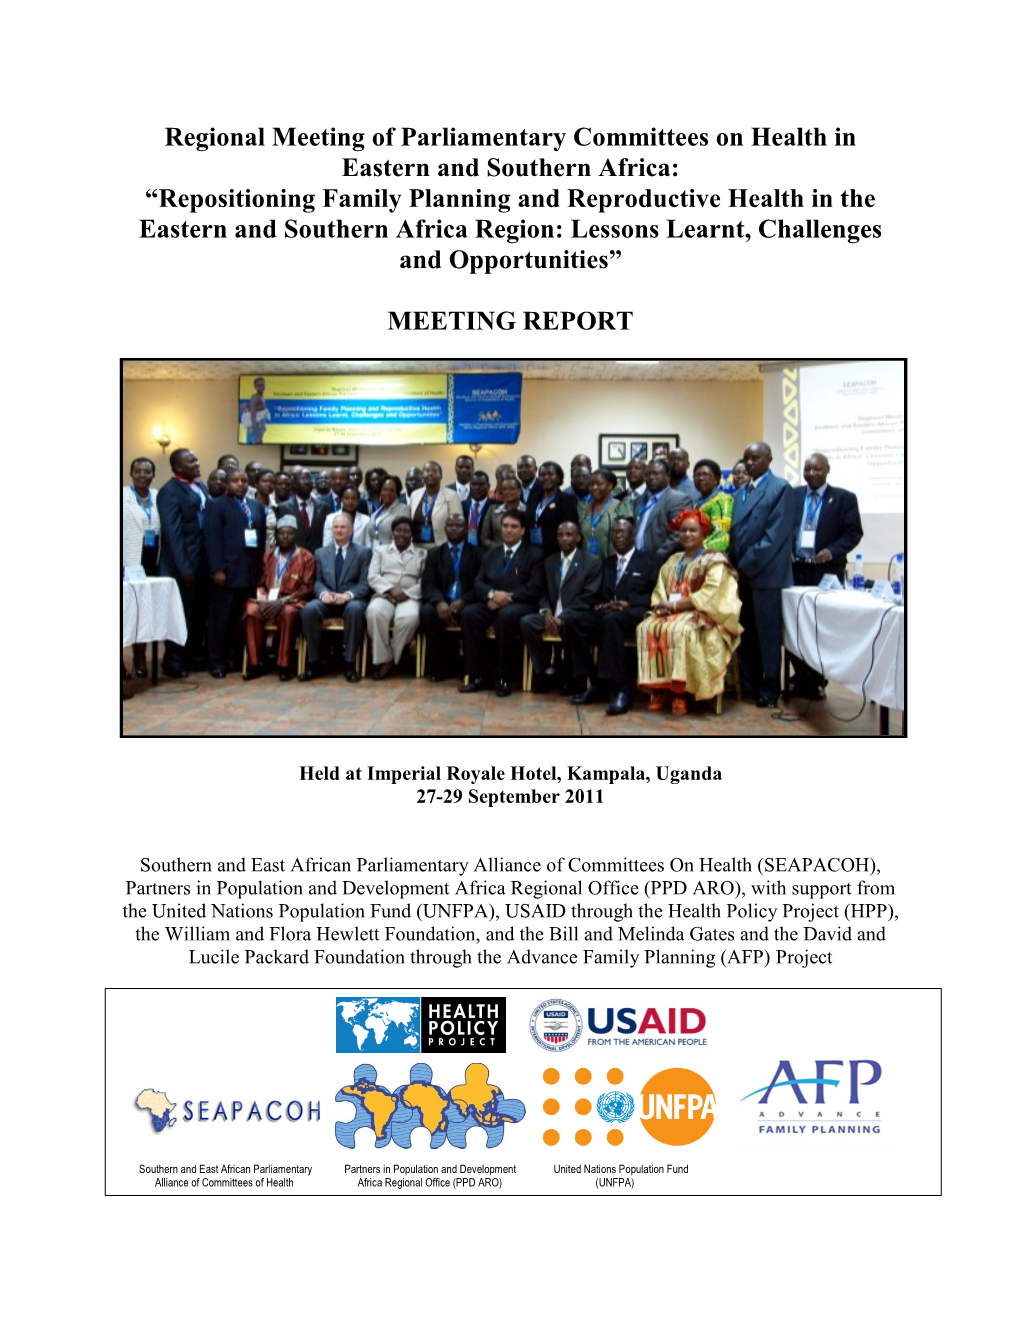 Regional Meeting of Parliamentary Committees on Health in Eastern